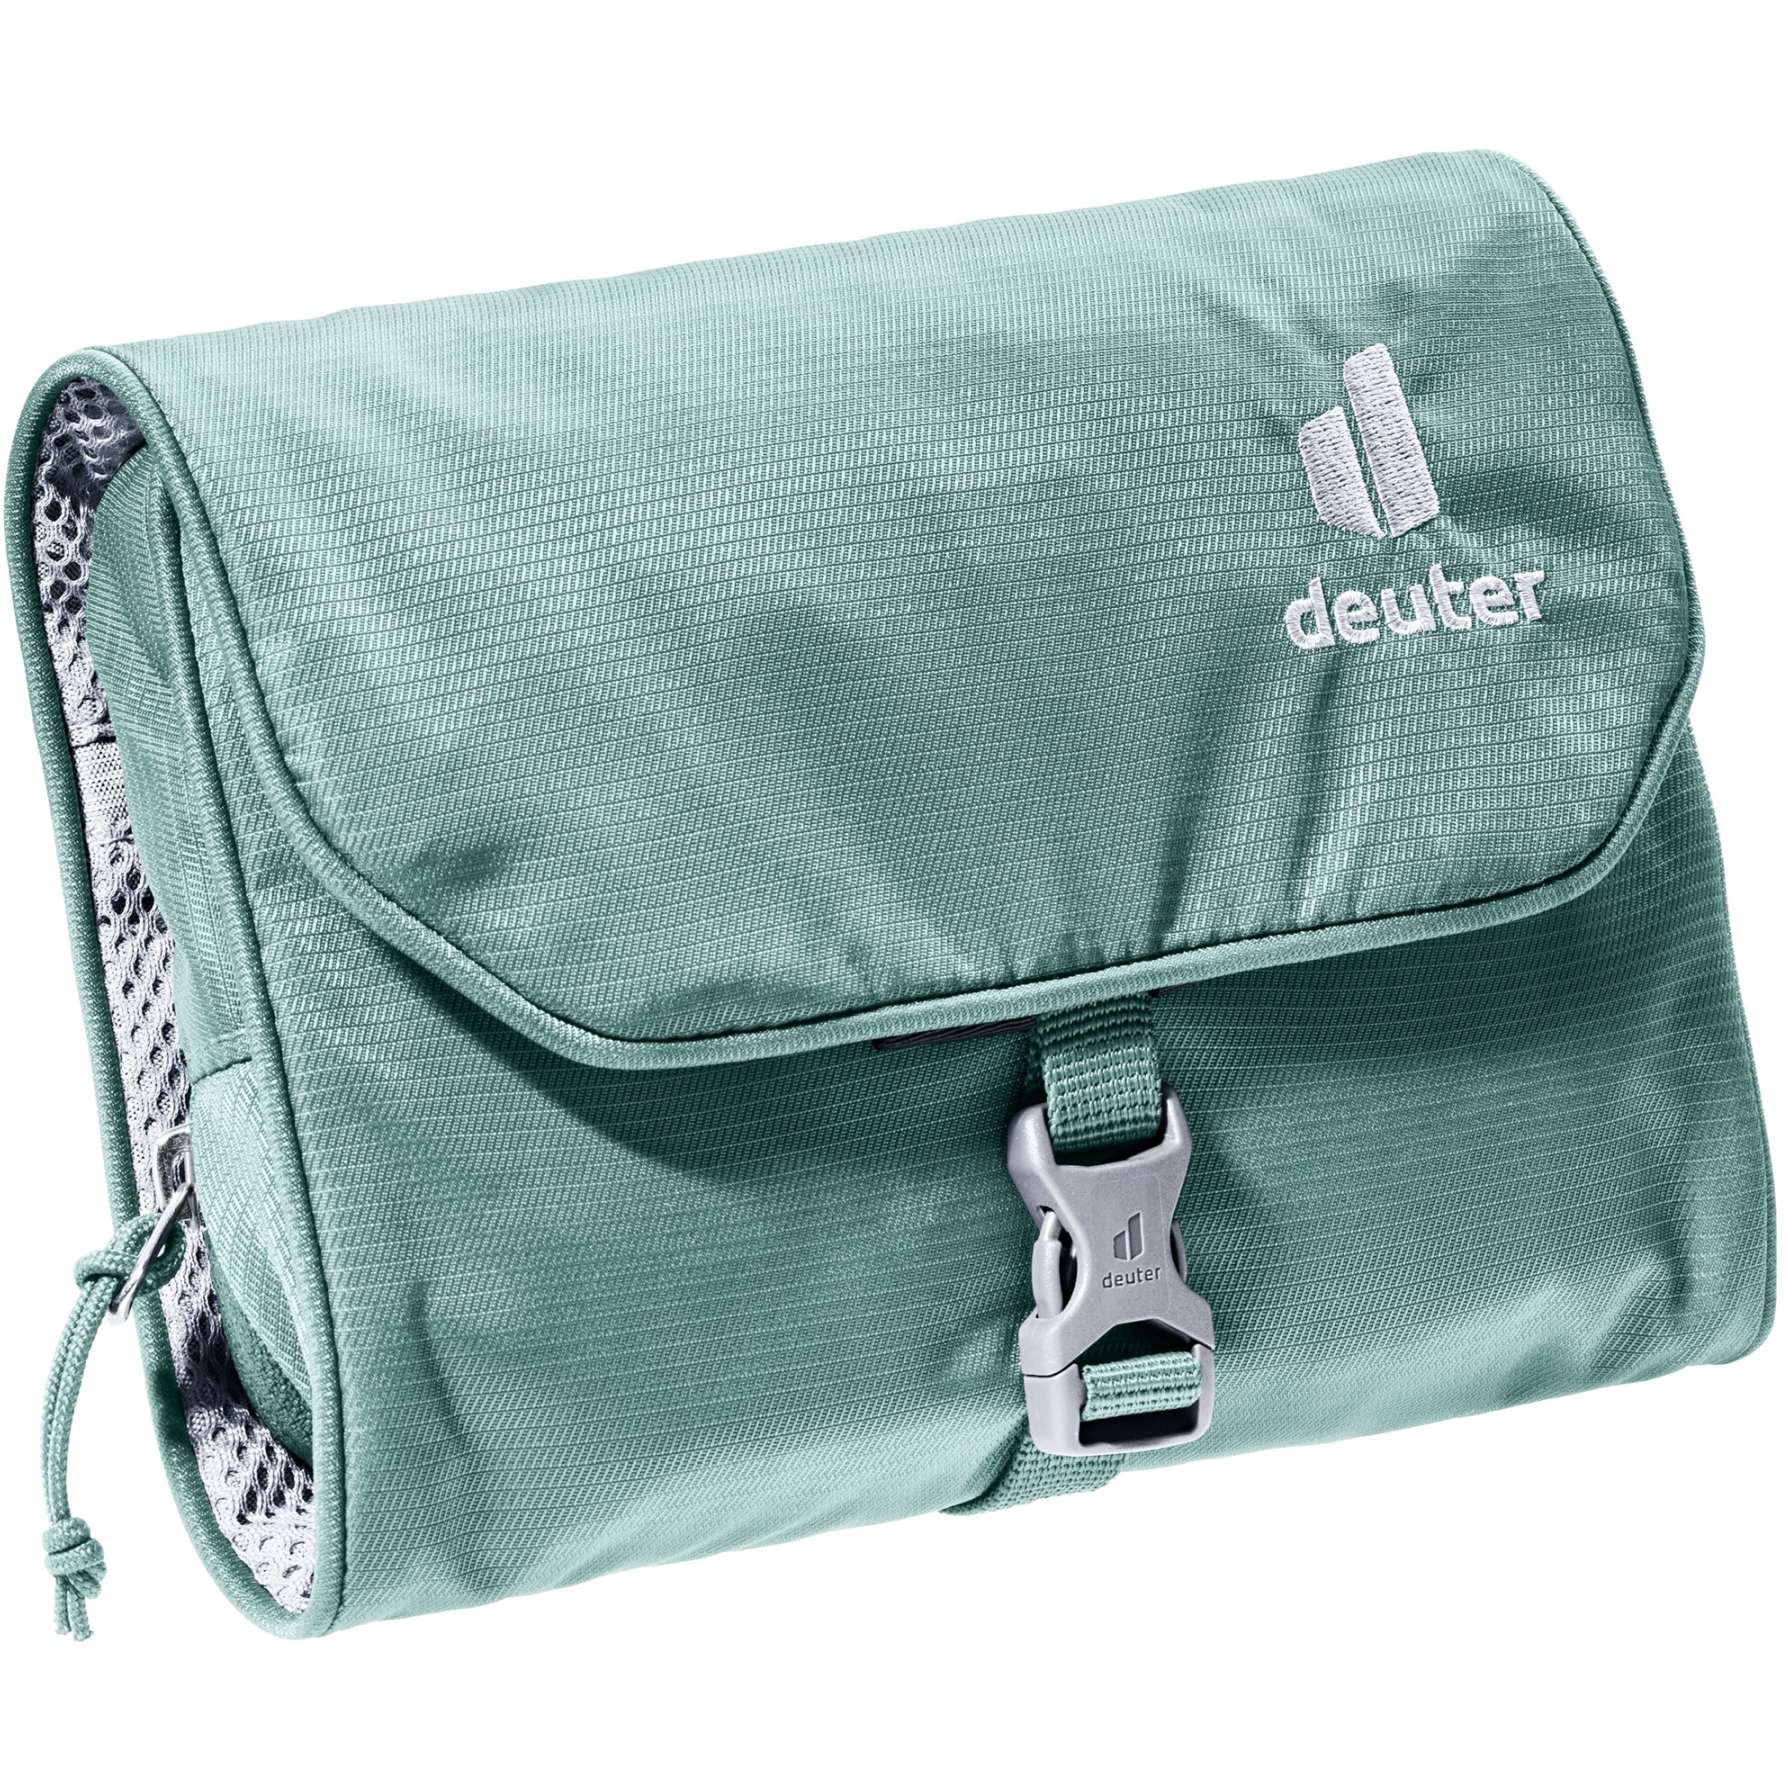 Produktbild von Deuter Wash Bag I Waschtasche - jade